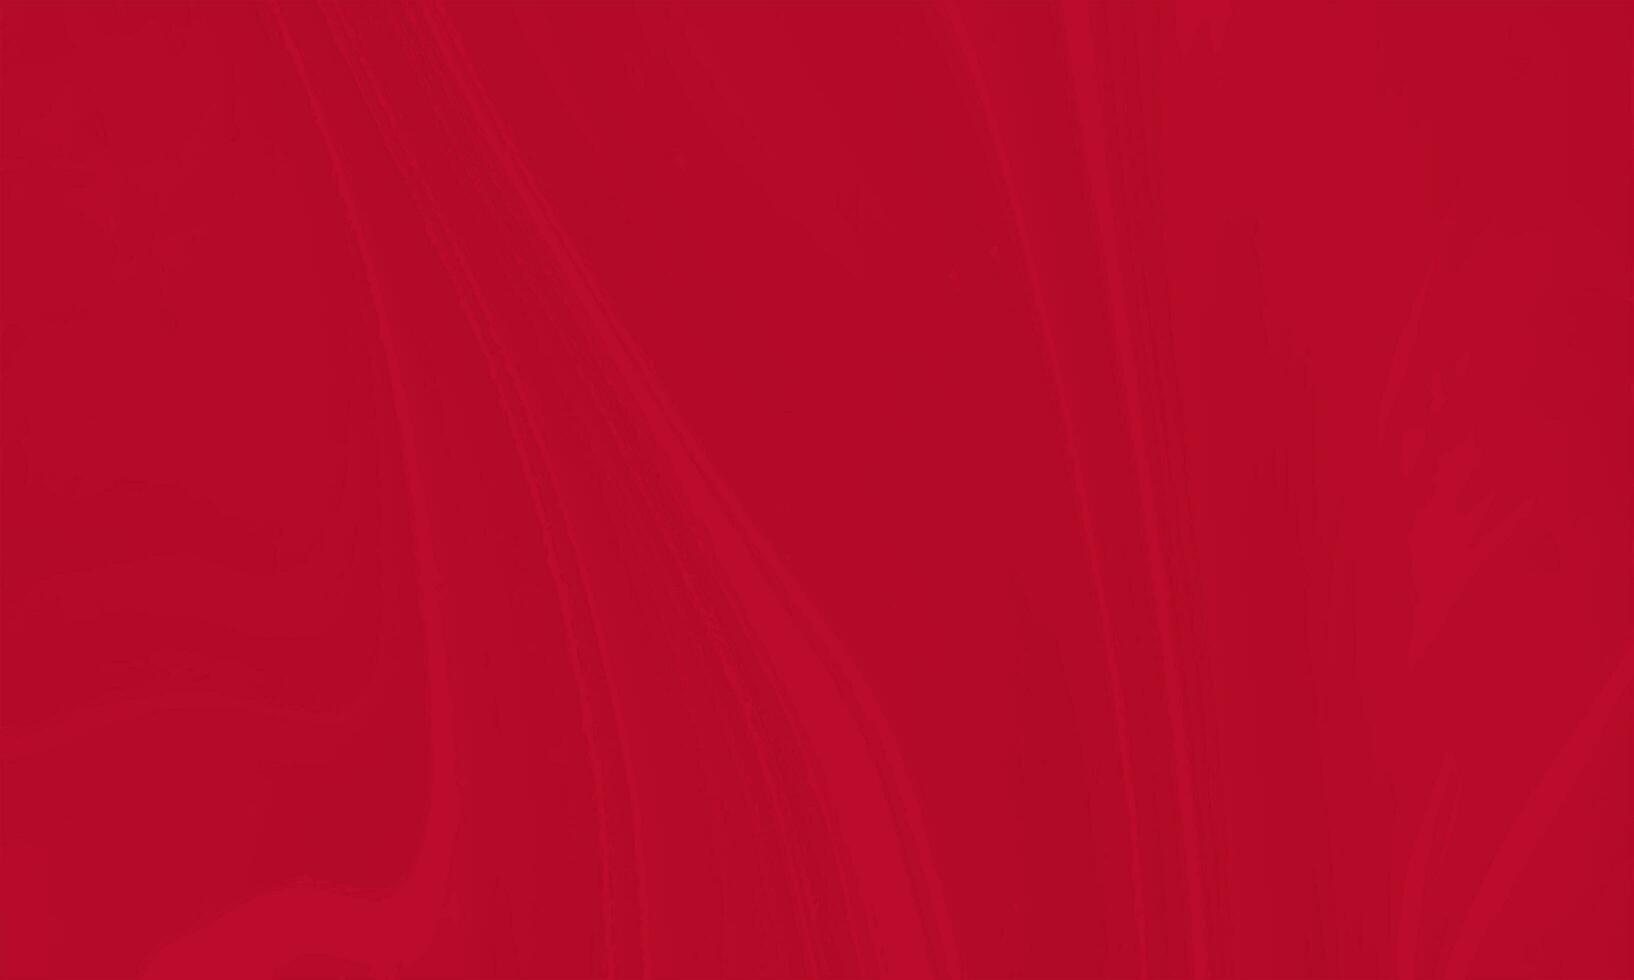 abstrato envelhecido líquido redemoinhos mármore textura padronizar Projeto vetor isolado em vermelho cor fundo. adequado para local na rede Internet, decoração, pano de fundo, bandeira, cópia de espaço para texto foto